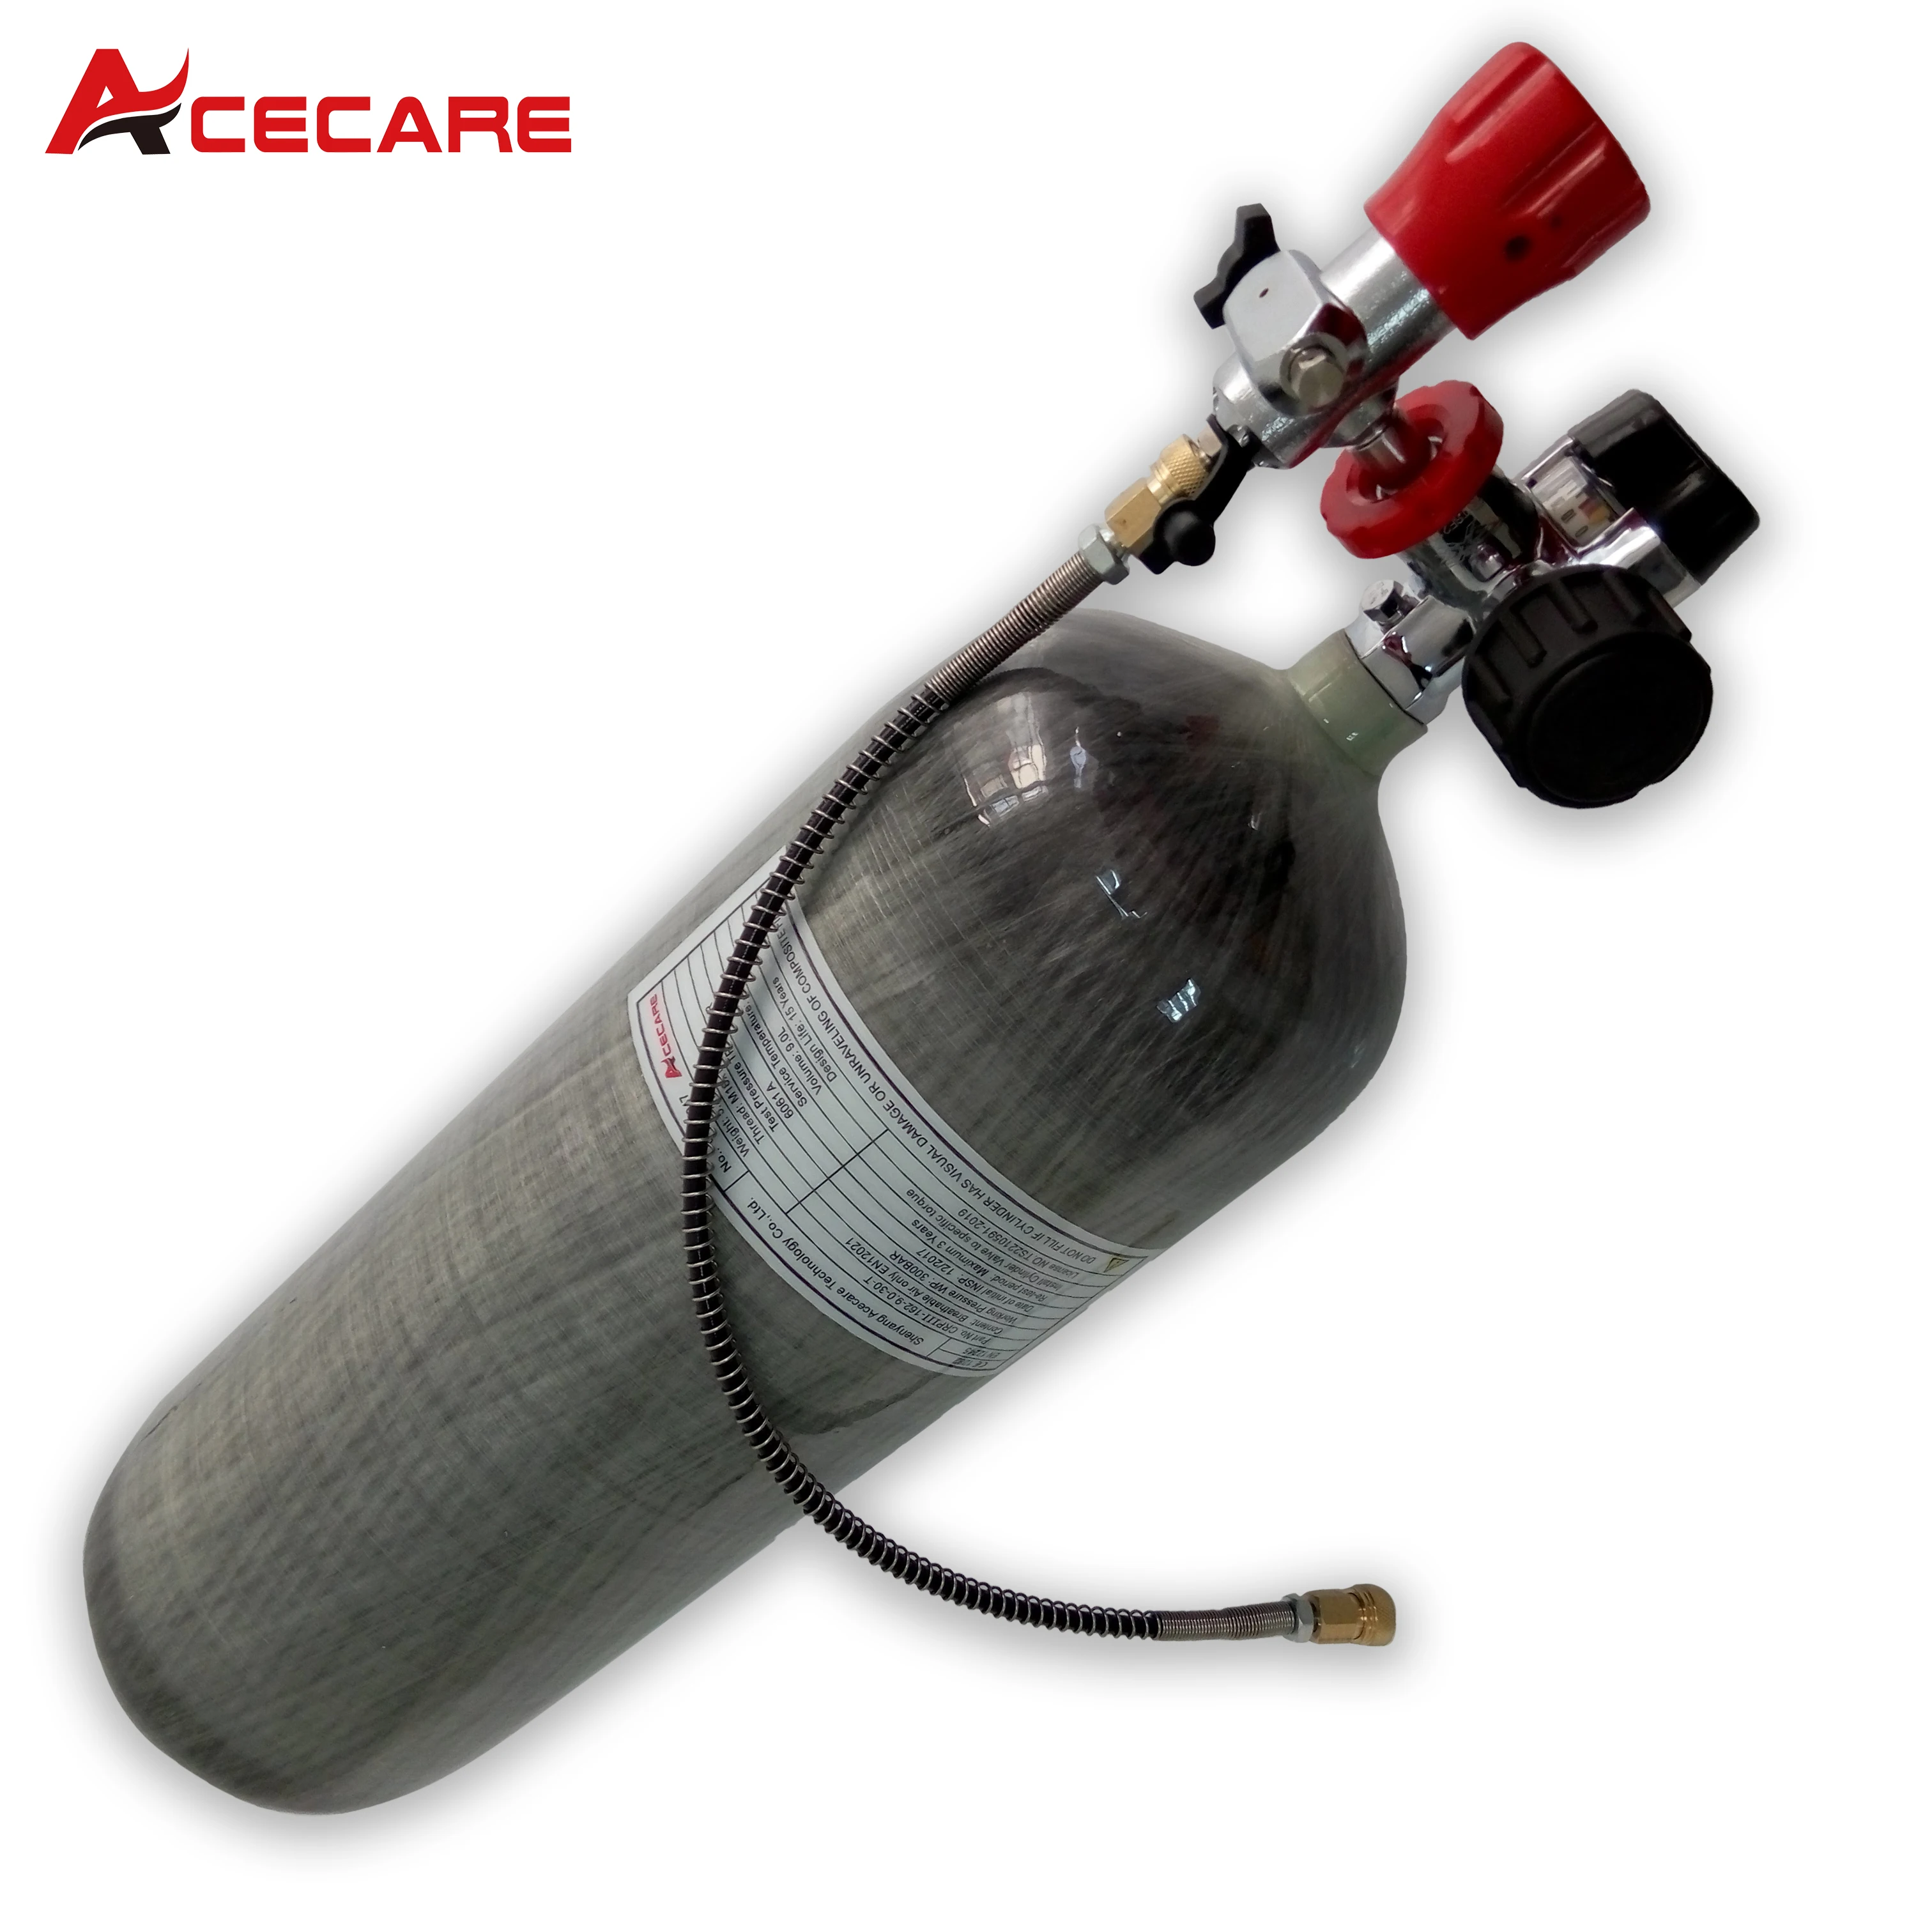 Acecare 9L CE газовый баллон из углеродного волокна 300Bar 4500psi HPA баллон с сжатым воздухом с клапаном для подводного плавания acecare 1 1l ce баллон из углеродного волокна для сжатого воздуха мини баллон для акваланга пейнтбола страйкбола баллон высокого давления балл